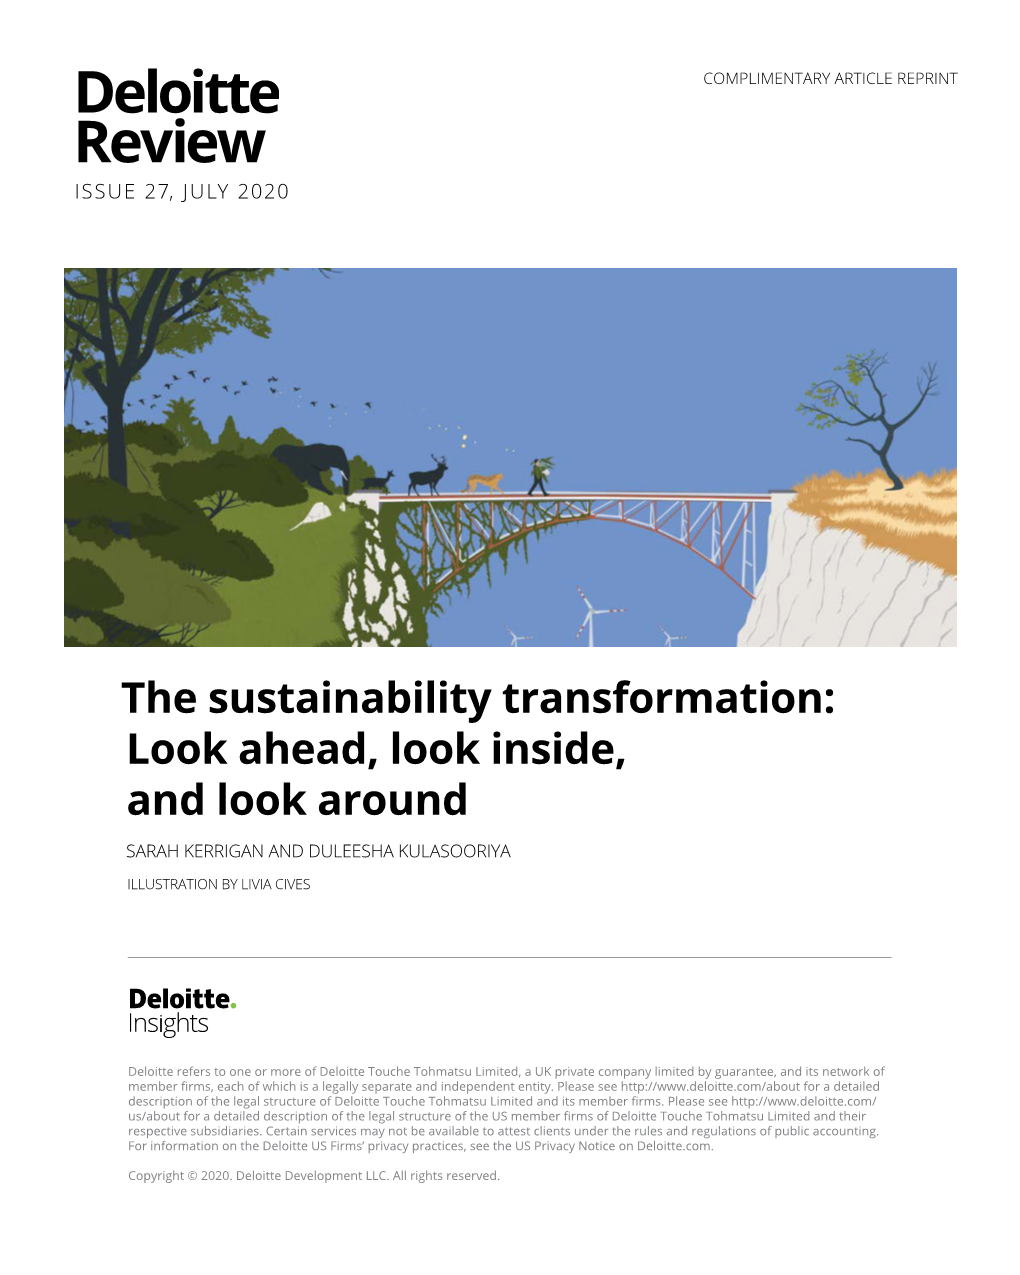 The Sustainability Transformation: Look Ahead, Look Inside, and Look Around SARAH KERRIGAN and DULEESHA KULASOORIYA